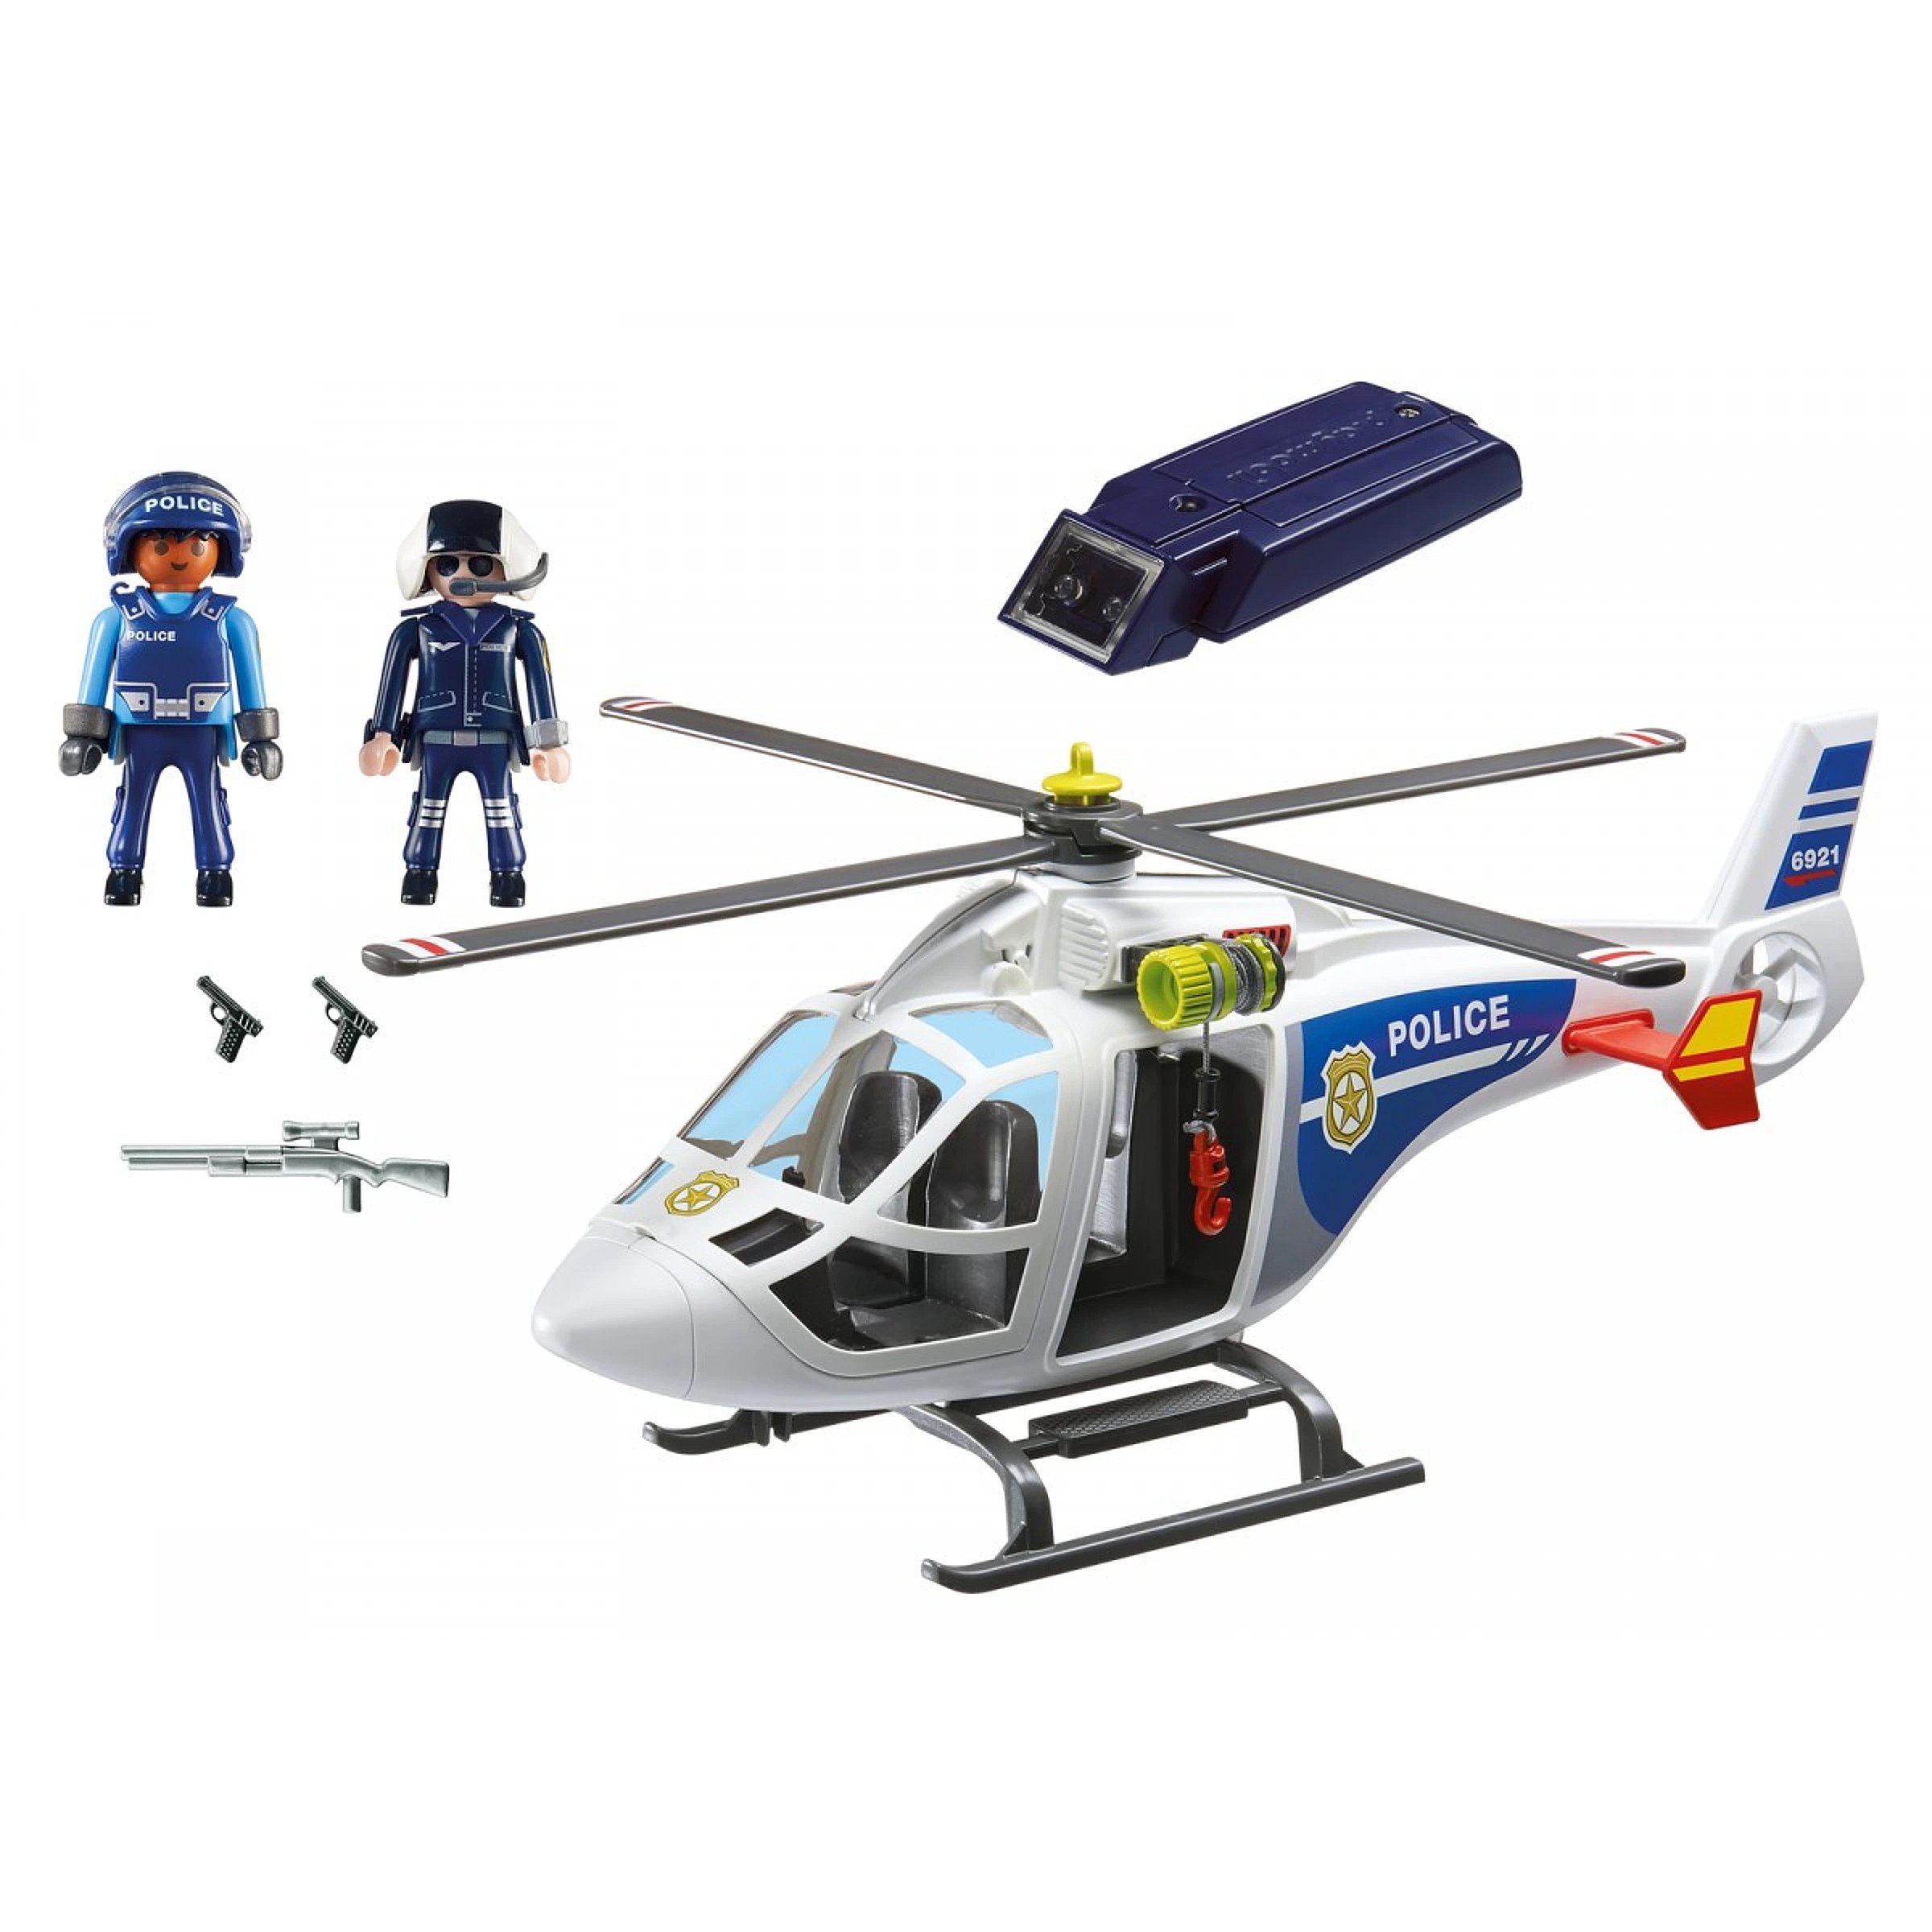 Playmobil 6921 Hélicoptère De Police Avec Projecteur